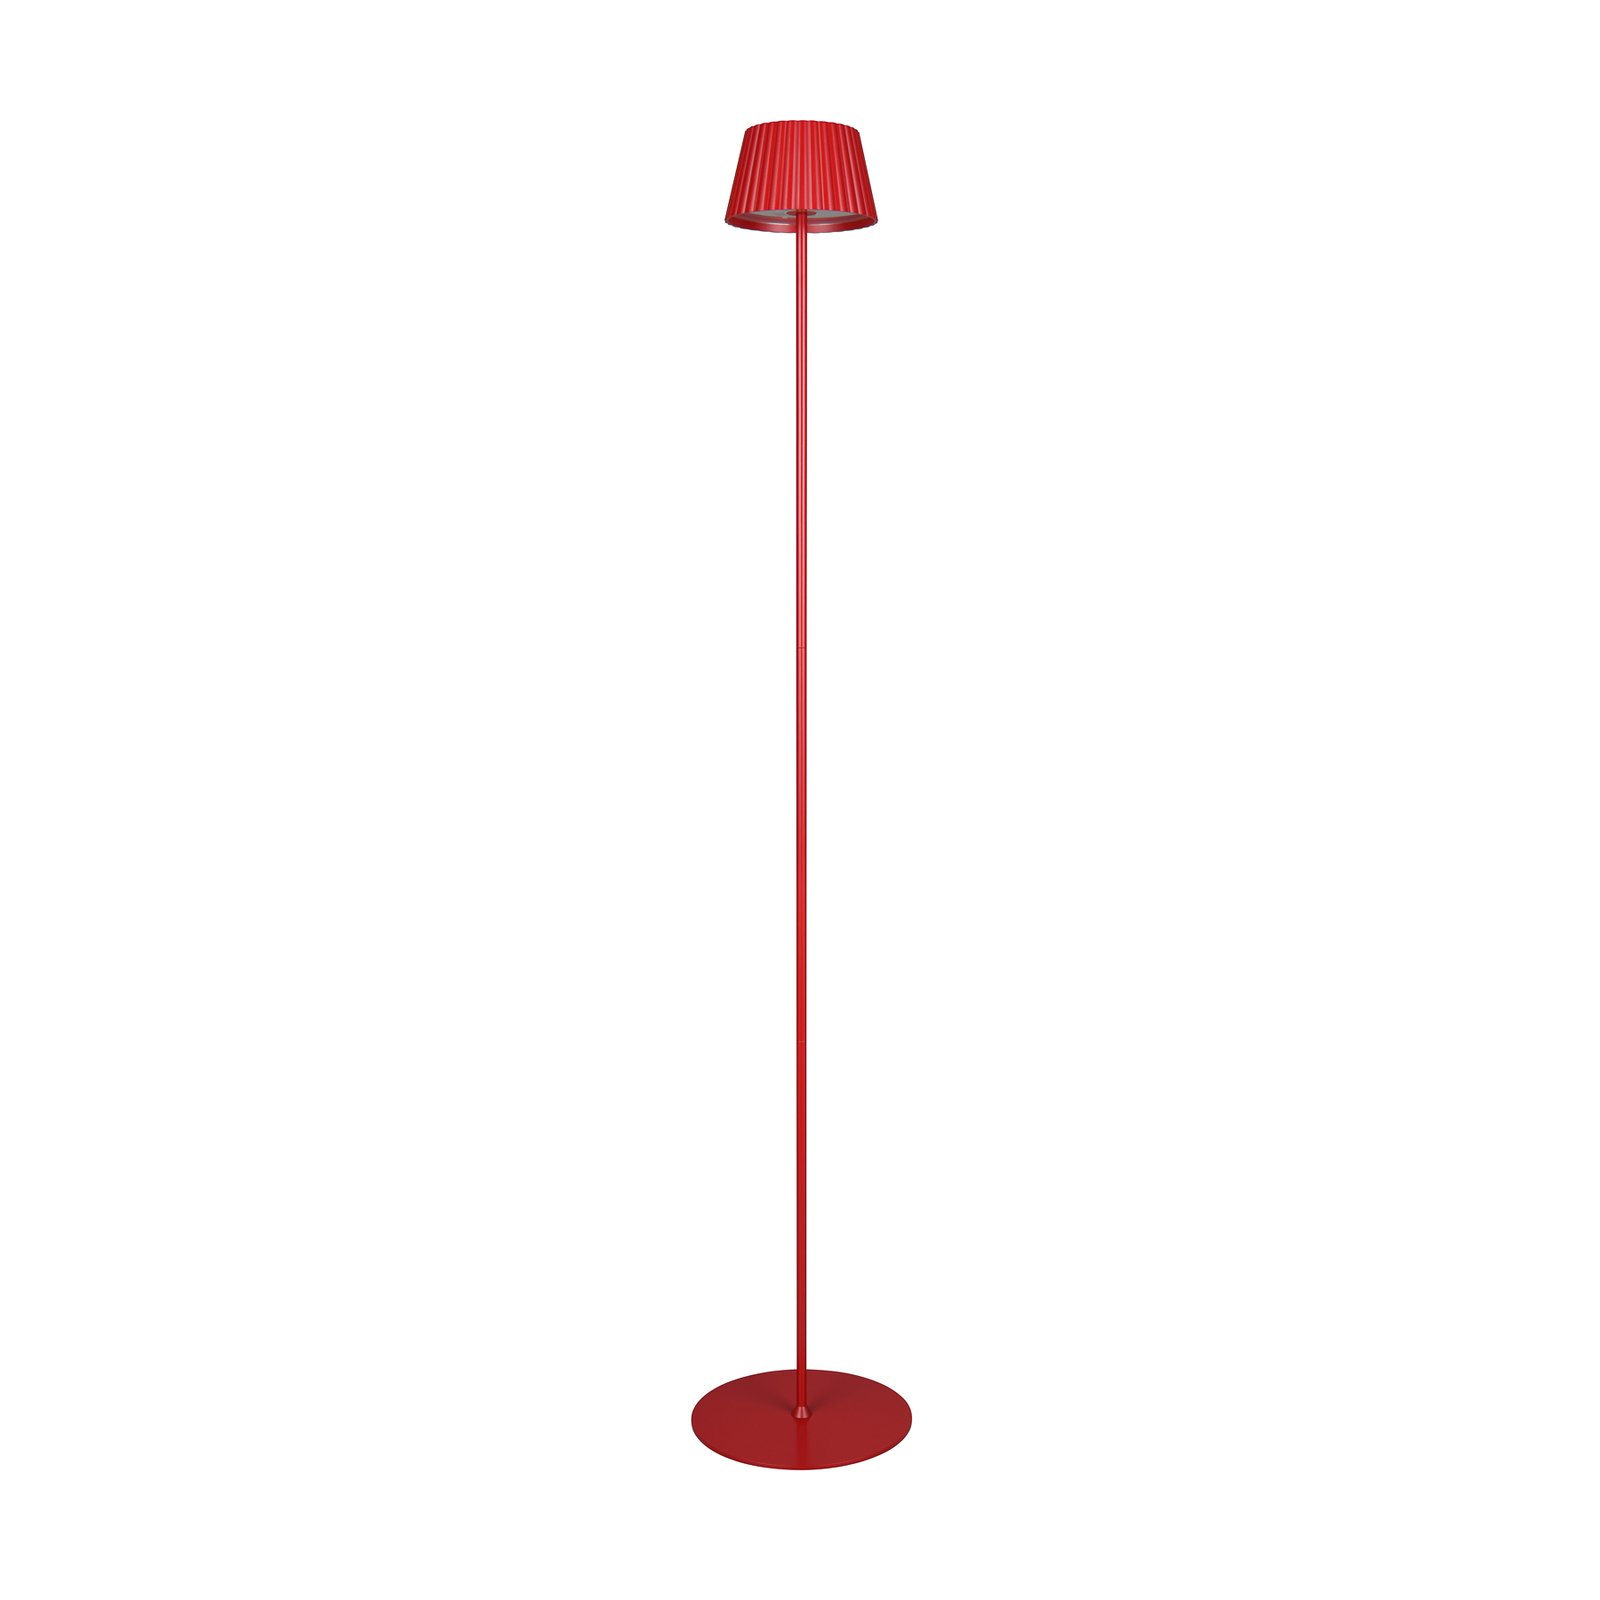 Suarez ladattava LED-lattiavalaisin, punainen, korkeus 123 cm, metallia